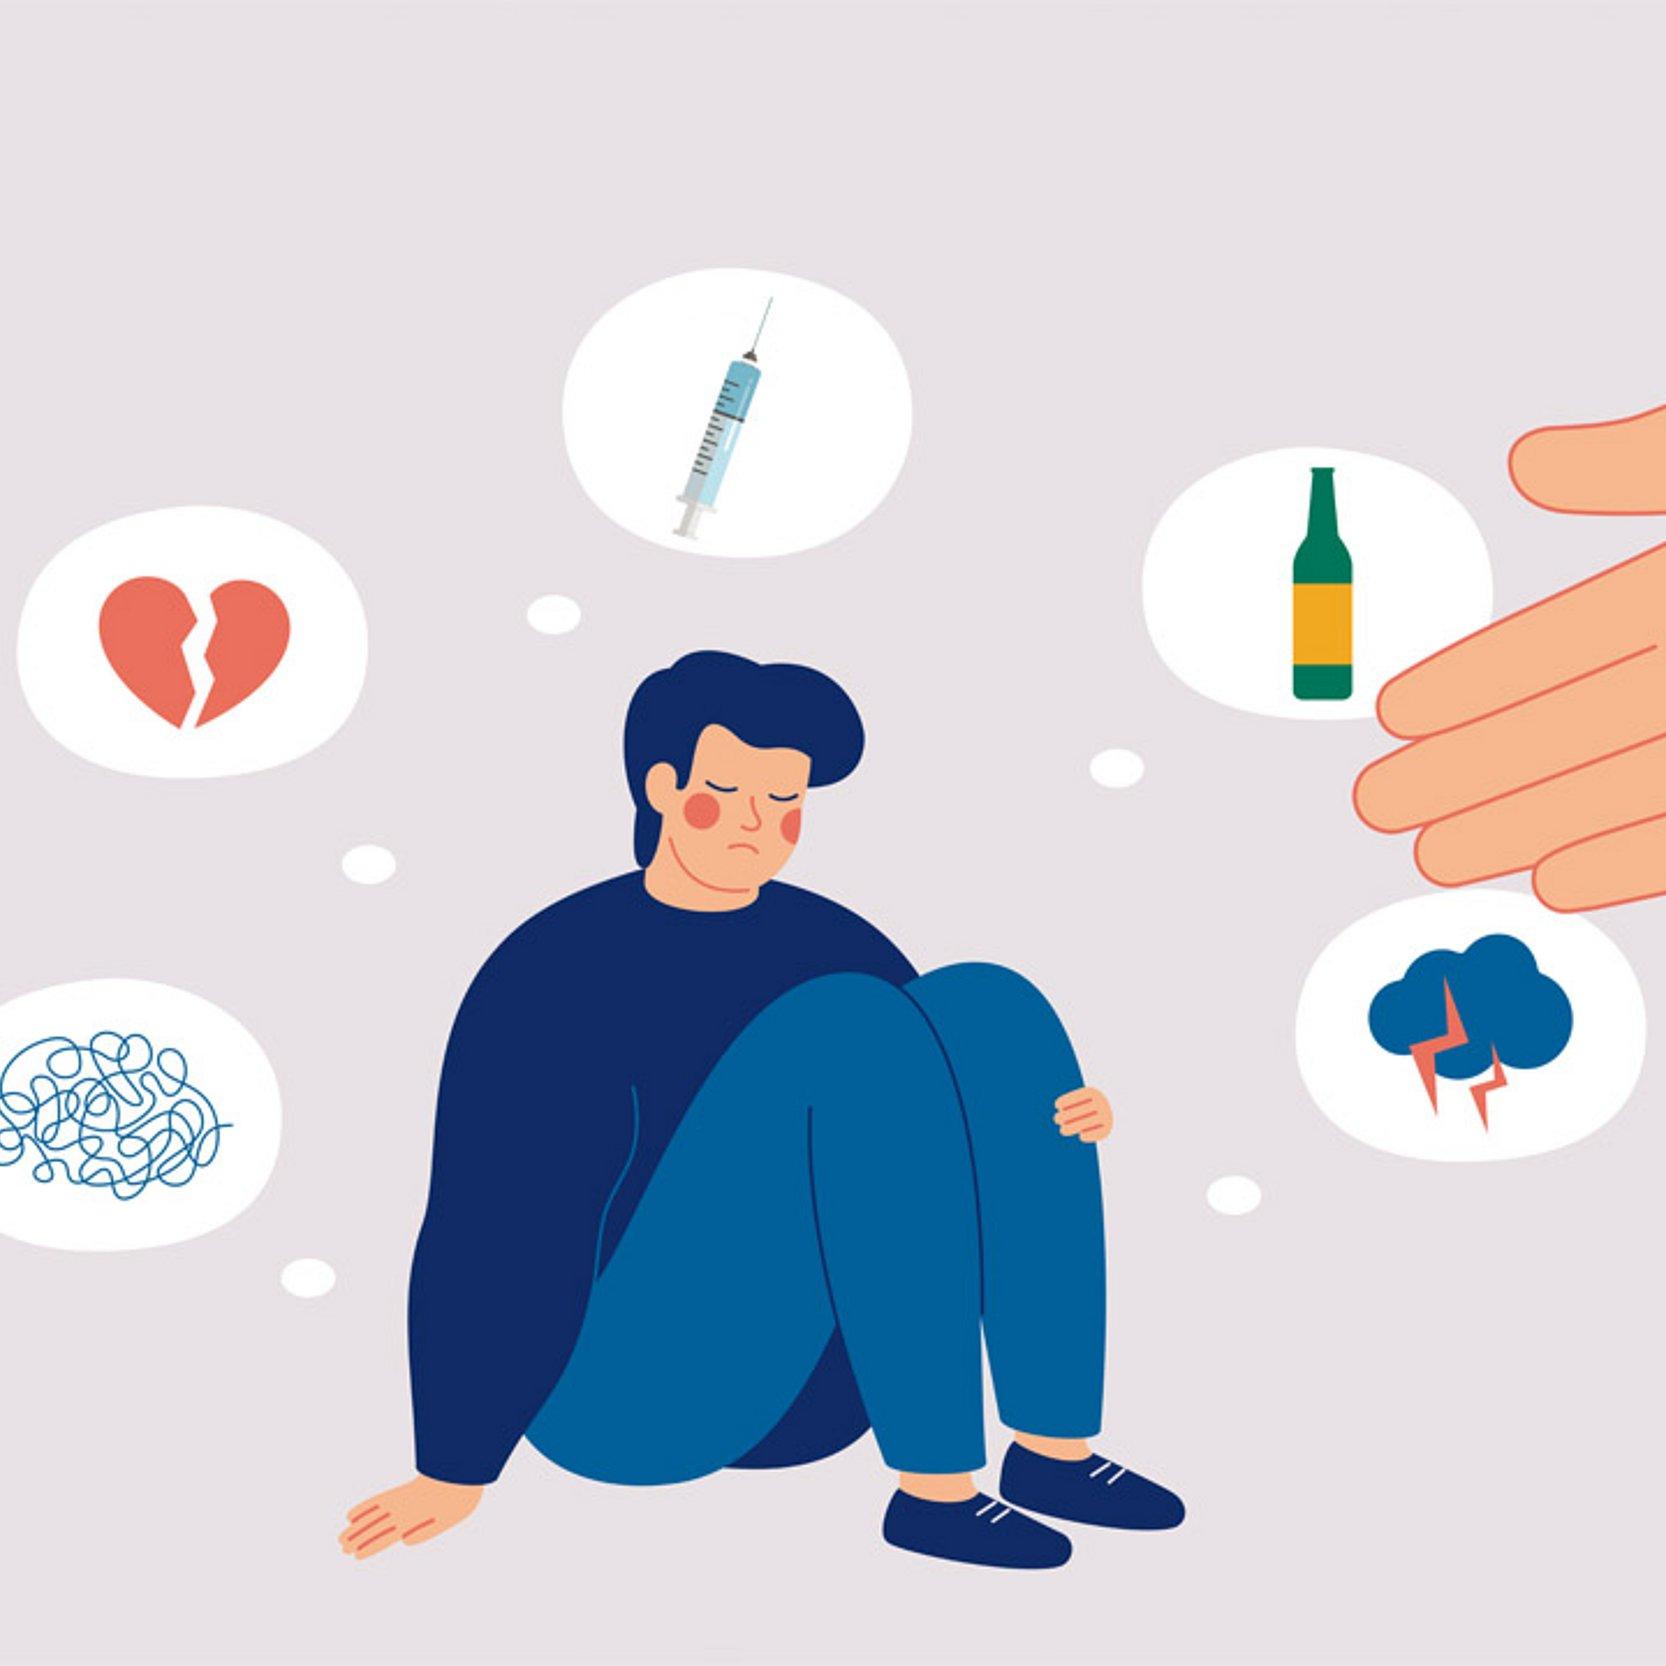 Grafik: Mann sitzt, um ihn herum Gedankenblasen mit zerbrochenem Herz, Spritze, Alkoholflasche, einer Gewitterwolke und einem verwirrenden Faden-Knäul